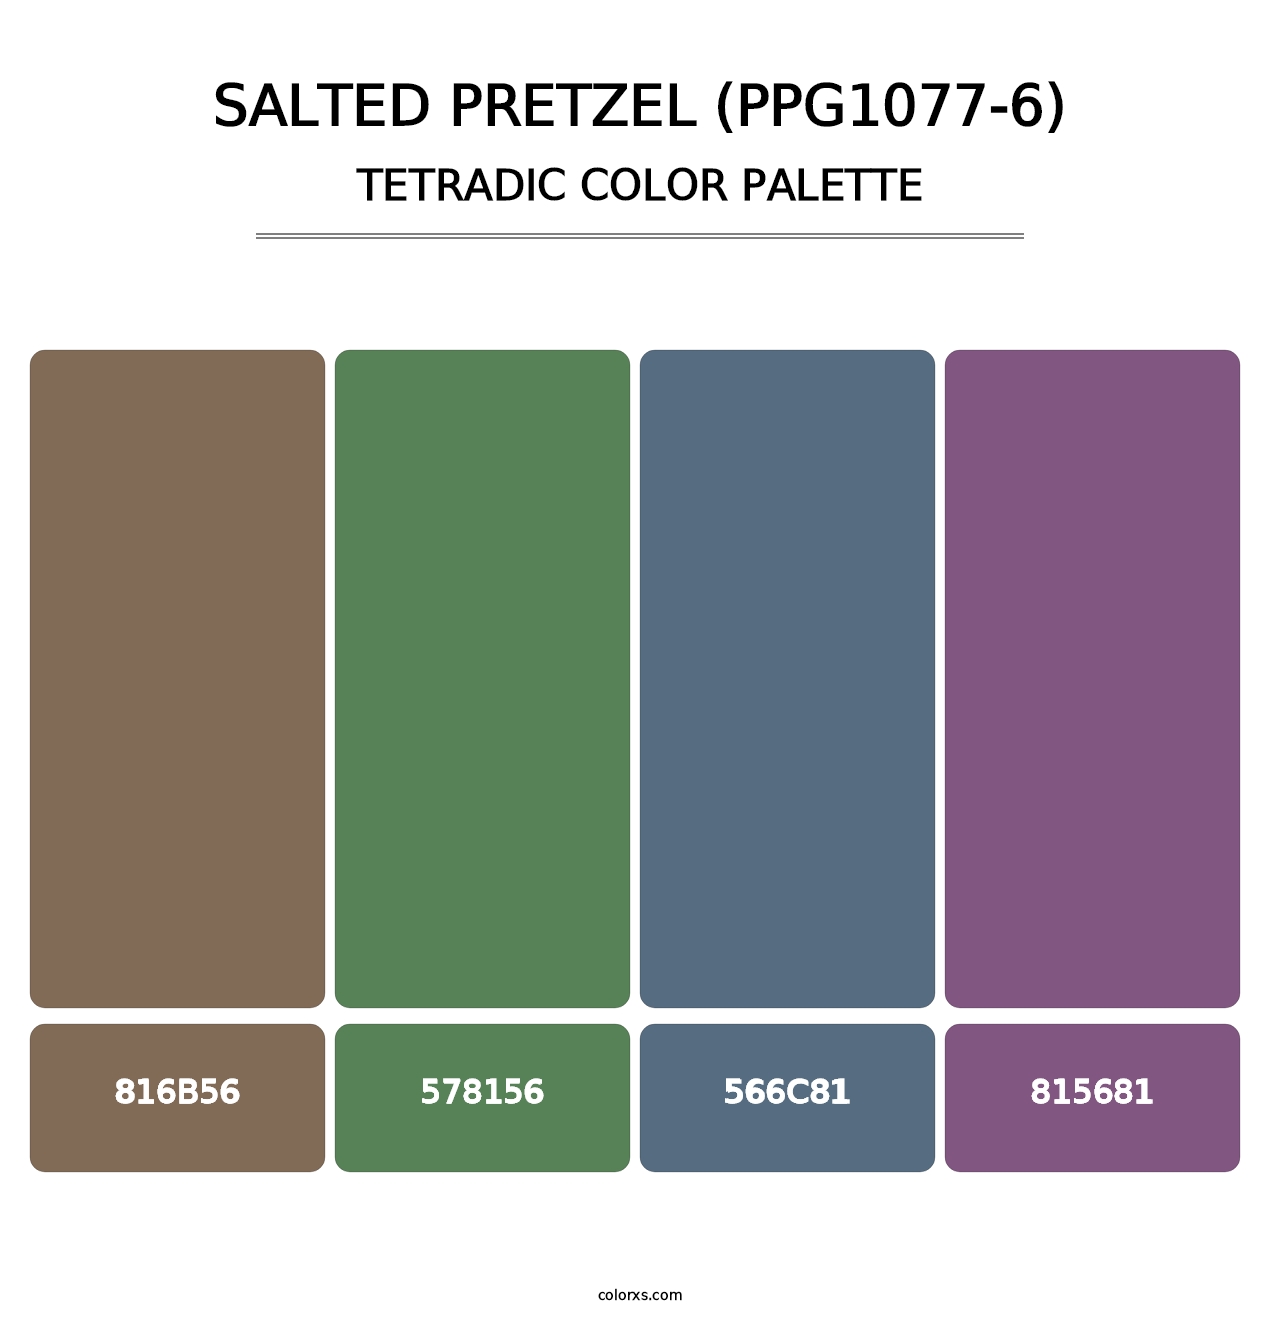 Salted Pretzel (PPG1077-6) - Tetradic Color Palette